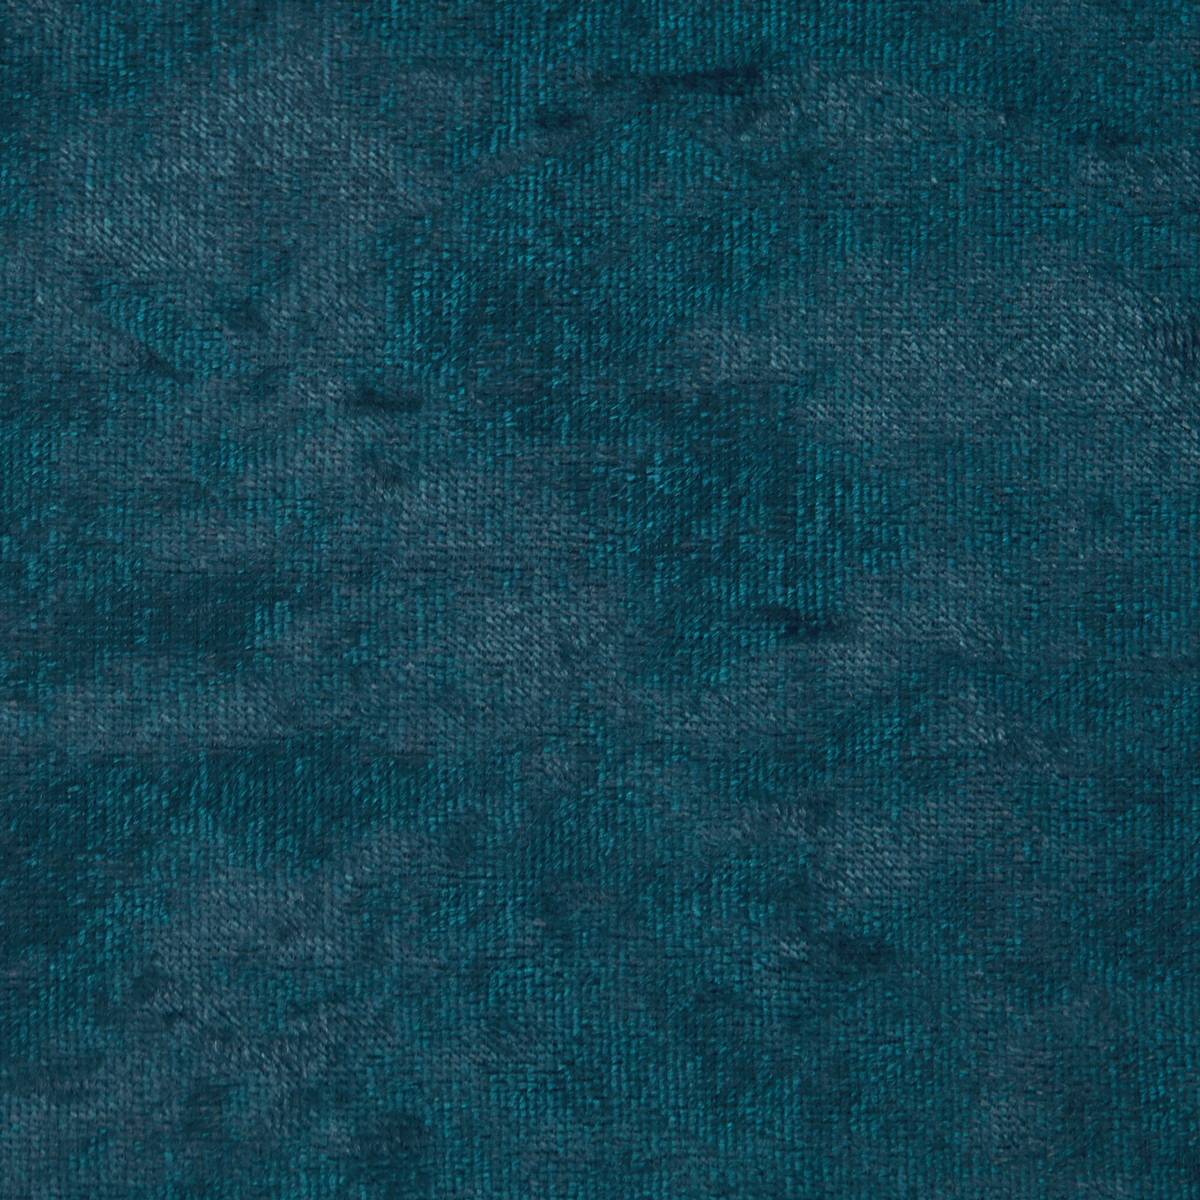 Gimili Aqua Fabric by Ashley Wilde